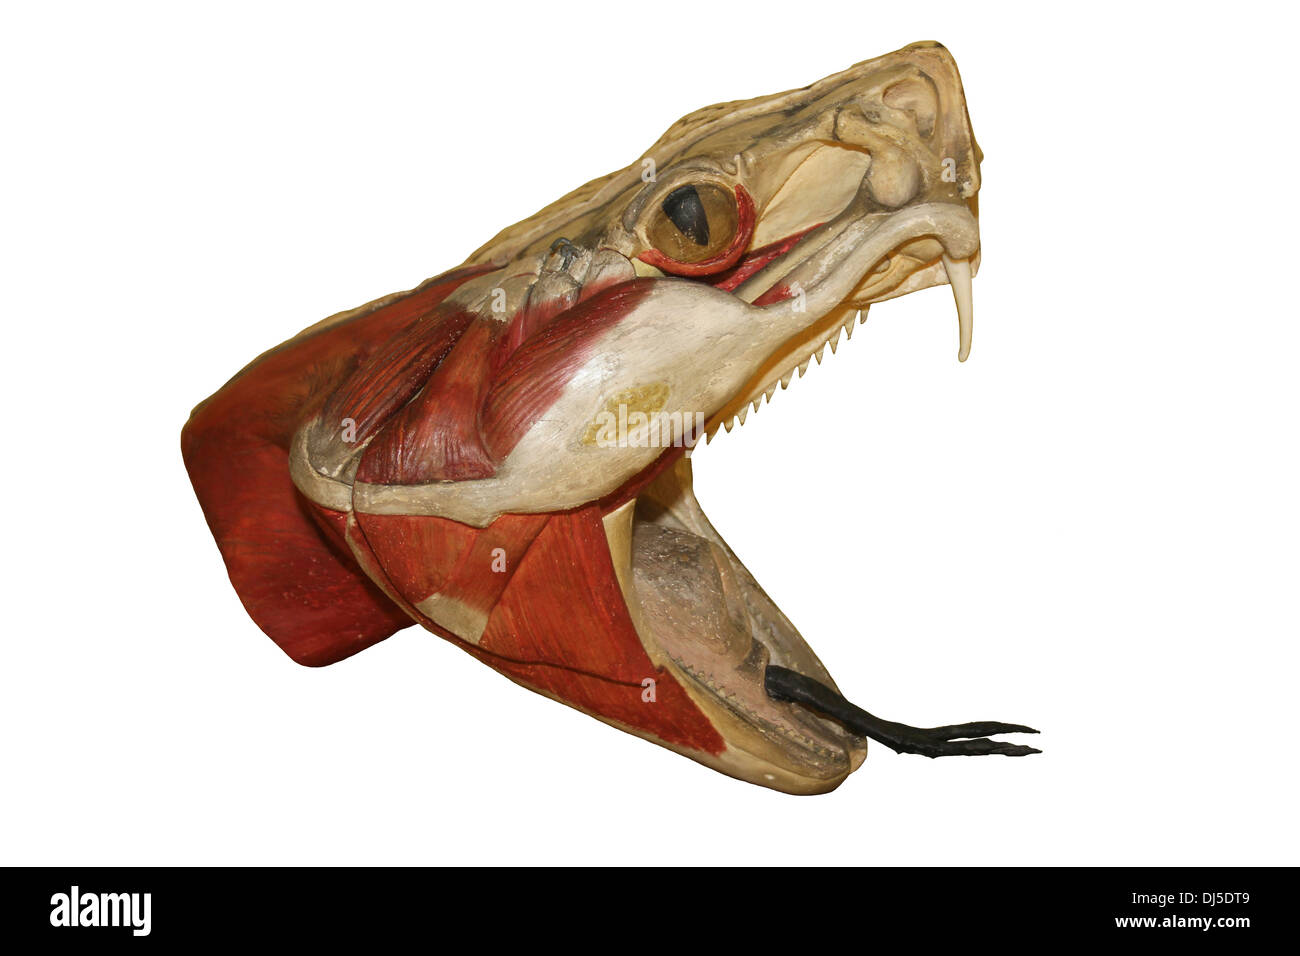 Modello anatomico di un testa di serpente Foto Stock